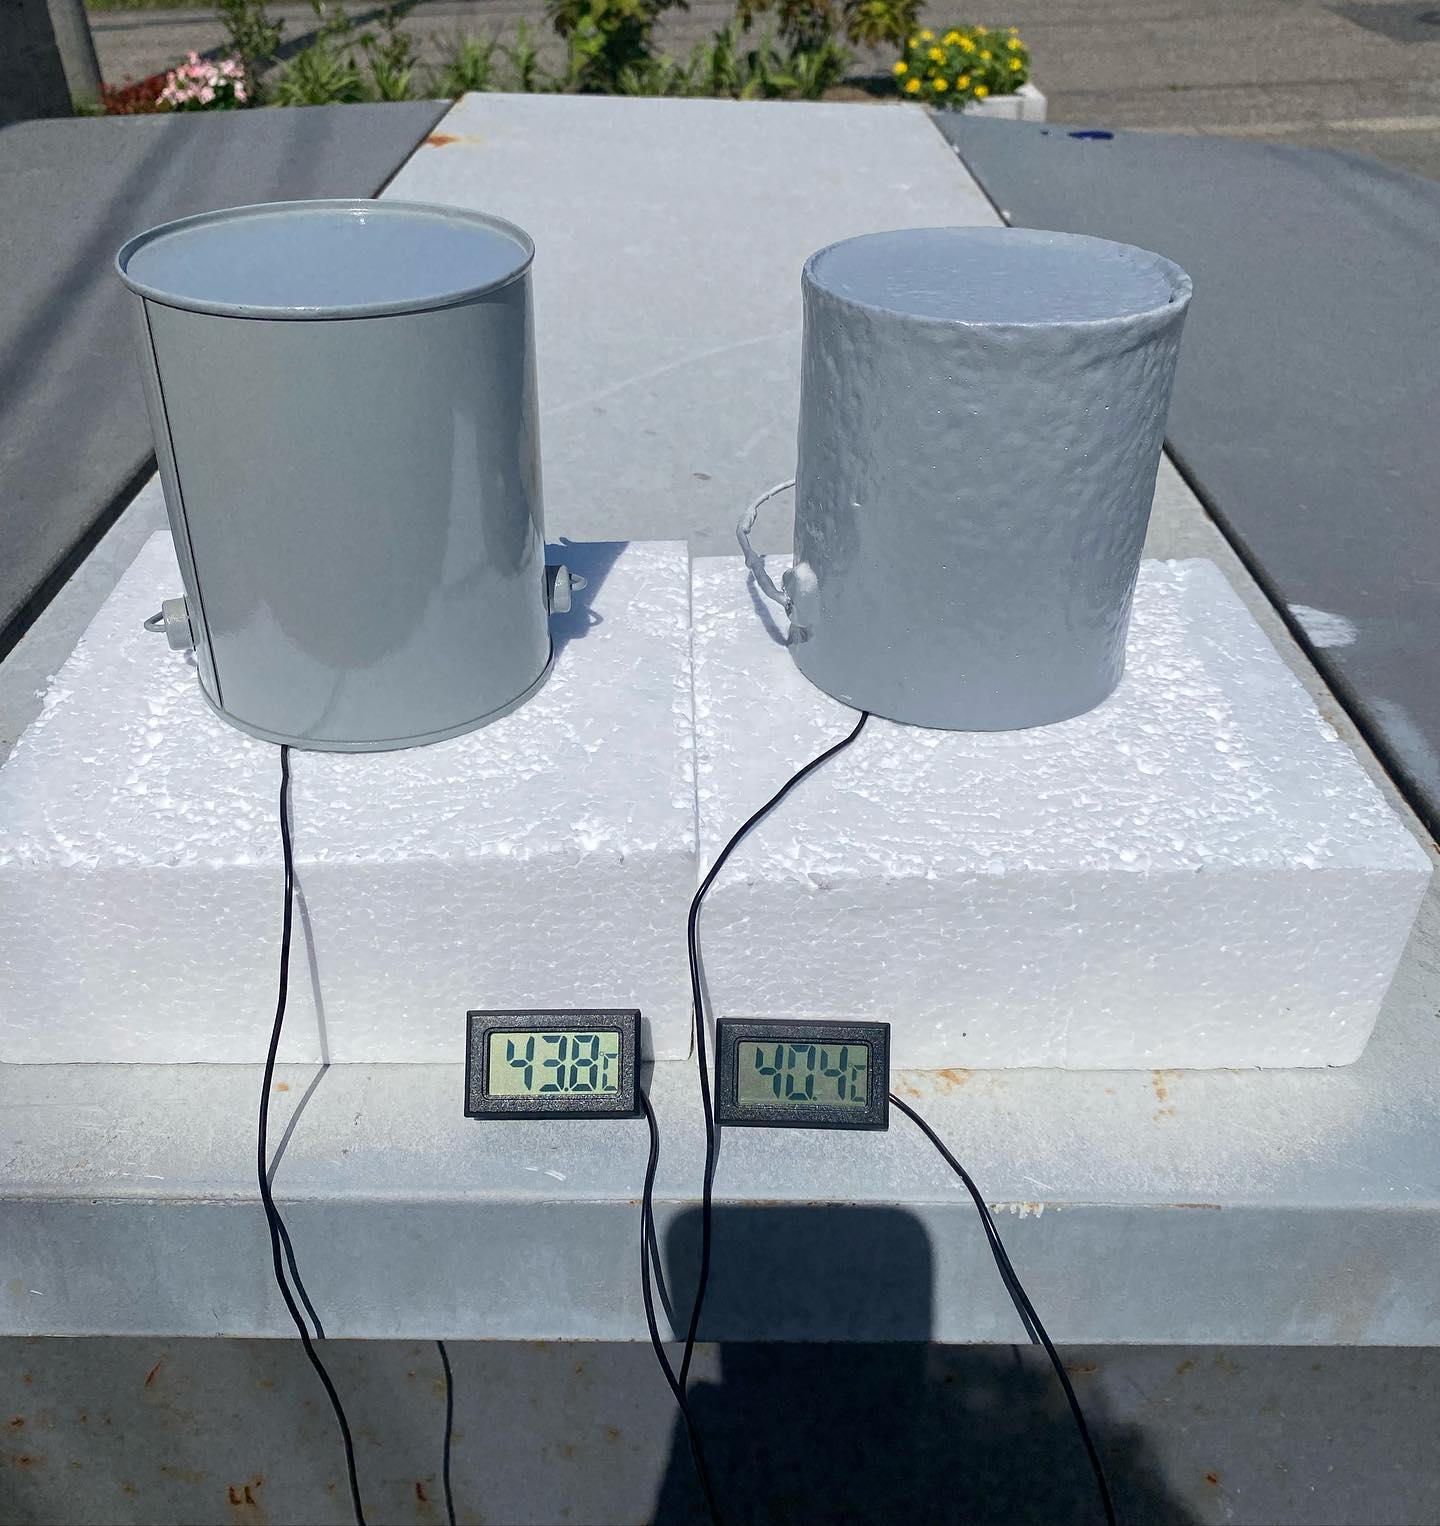 メモ遮熱断熱塗装のテスト缶の中に温度計センサーを立てて計測しています右側が断熱コート(東日本塗料)+スーパートップ遮熱(東日本塗料)左側がネオプライマーCF(川上塗料)+弾性トップ14(東日本塗料)缶内の気温は、右側40.4℃左側が43.8℃表面の温度で右上が50.9℃左側が59.3℃でした(7/20の14：45)表面温度と熱伝導を抑える事で、内部の気温を下げることができていましたエアコンの電気代を抑える省エネ塗装として再注目されています是非ご検討ください#遮熱塗料#断熱塗料#省エネ#建築塗装#東日本塗料